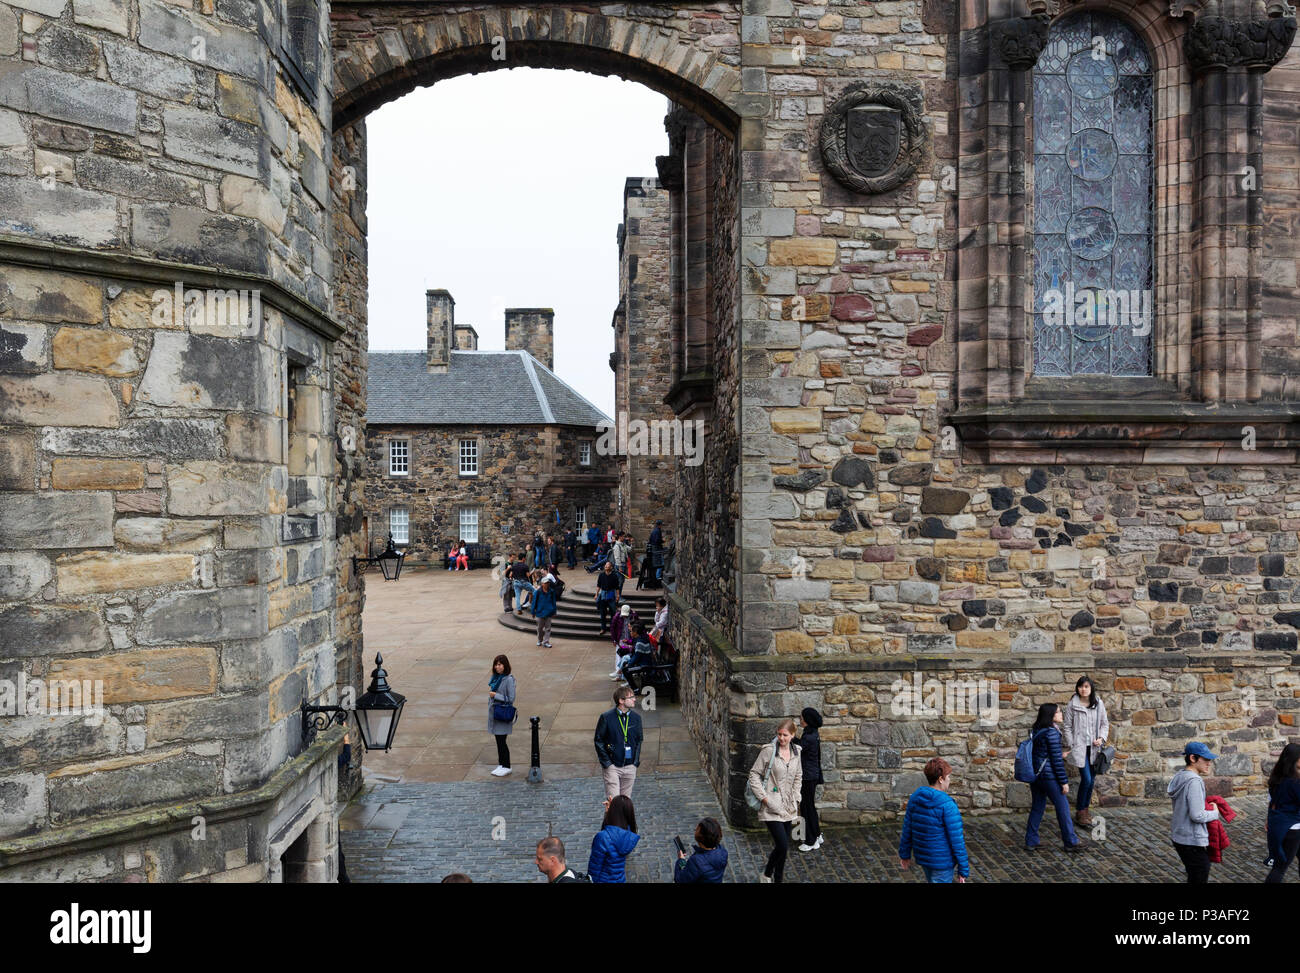 Touristen auf dem Gelände der Burg von Edinburgh, Edinburgh Altstadt, Weltkulturerbe der UNESCO, Edinburgh Schottland Großbritannien Stockfoto